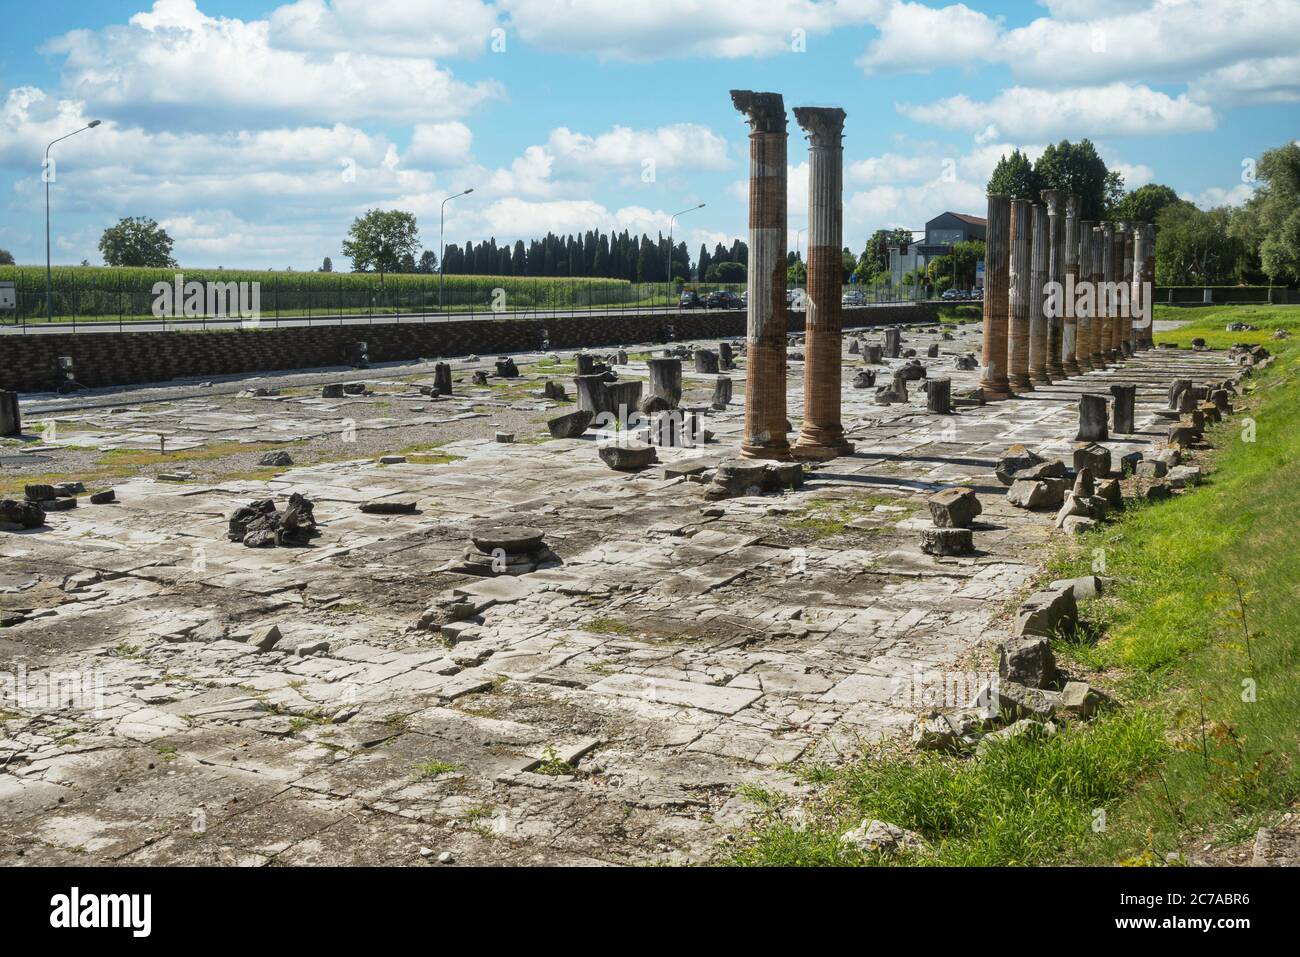 La vue panoramique du forum romain d'Aquileia, l'ancienne place principale du centre-ville de Roman Aquileia du 1er siècle avant J.-C. (le pavé Banque D'Images